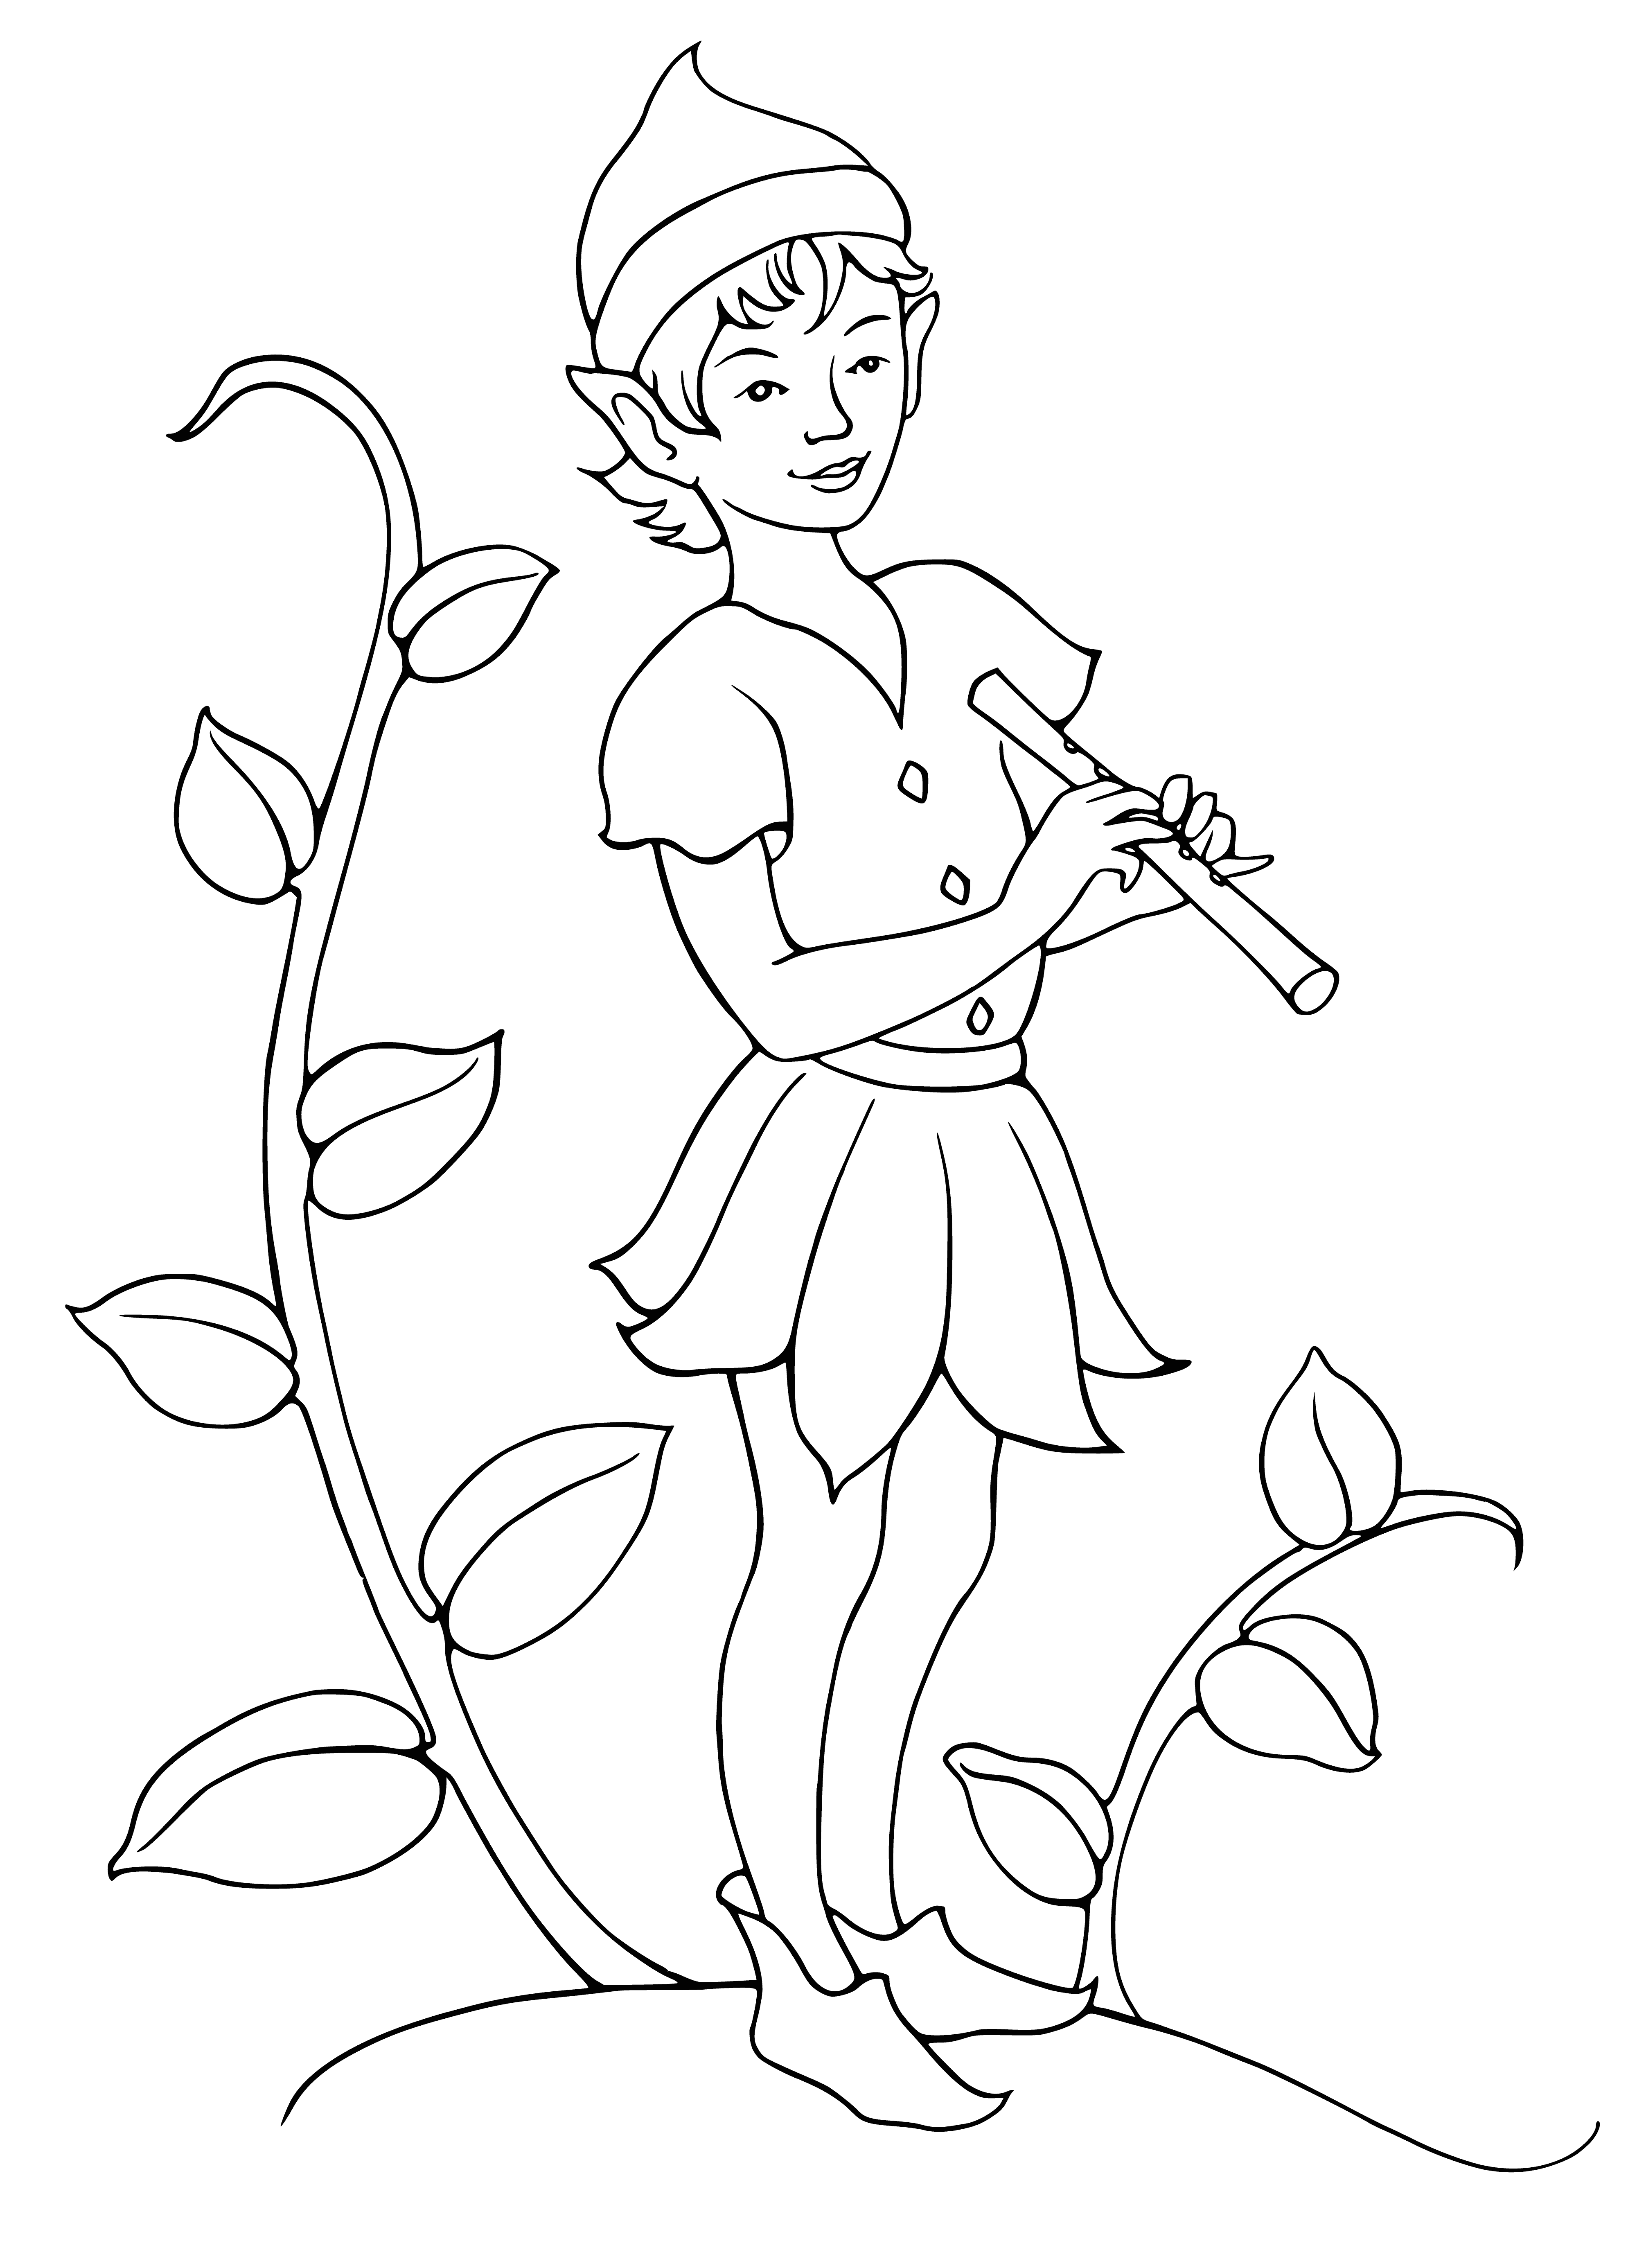 Menino elfo com um cachimbo nas mãos página para colorir